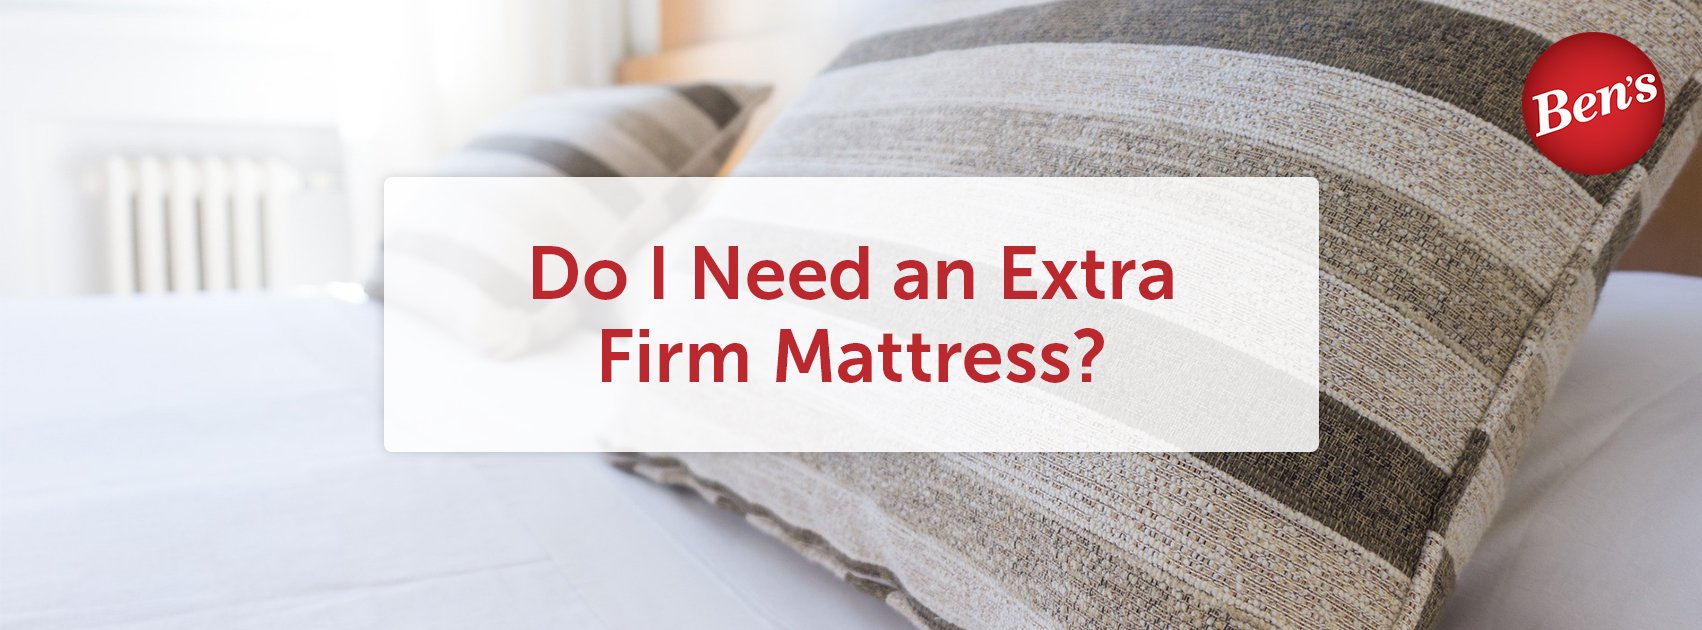 Do I Need an Extra Firm Mattress?